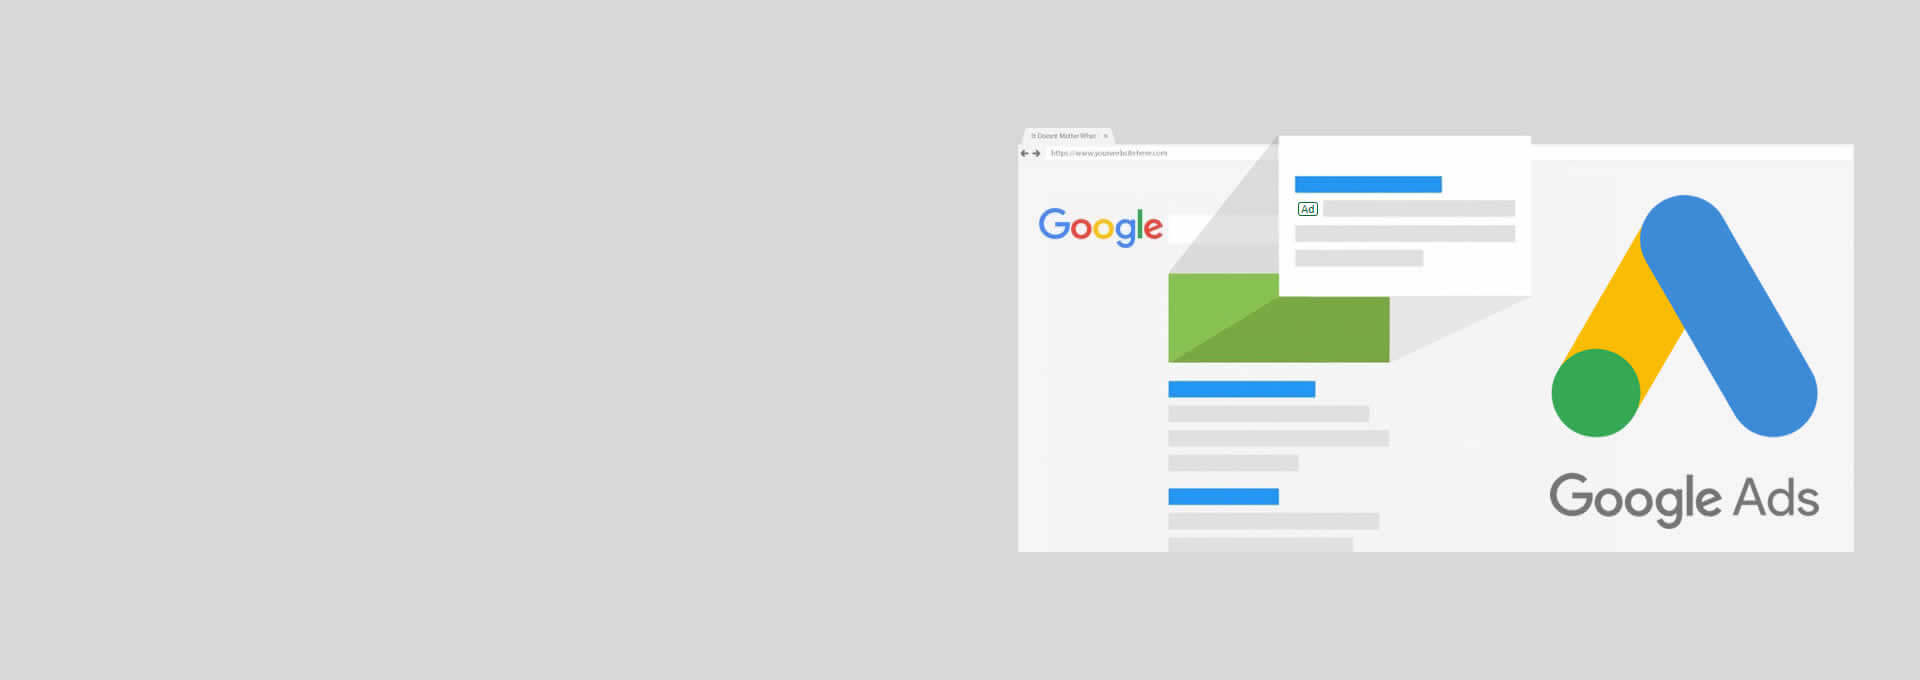 G Suite, i servizi Google per la tua azienda